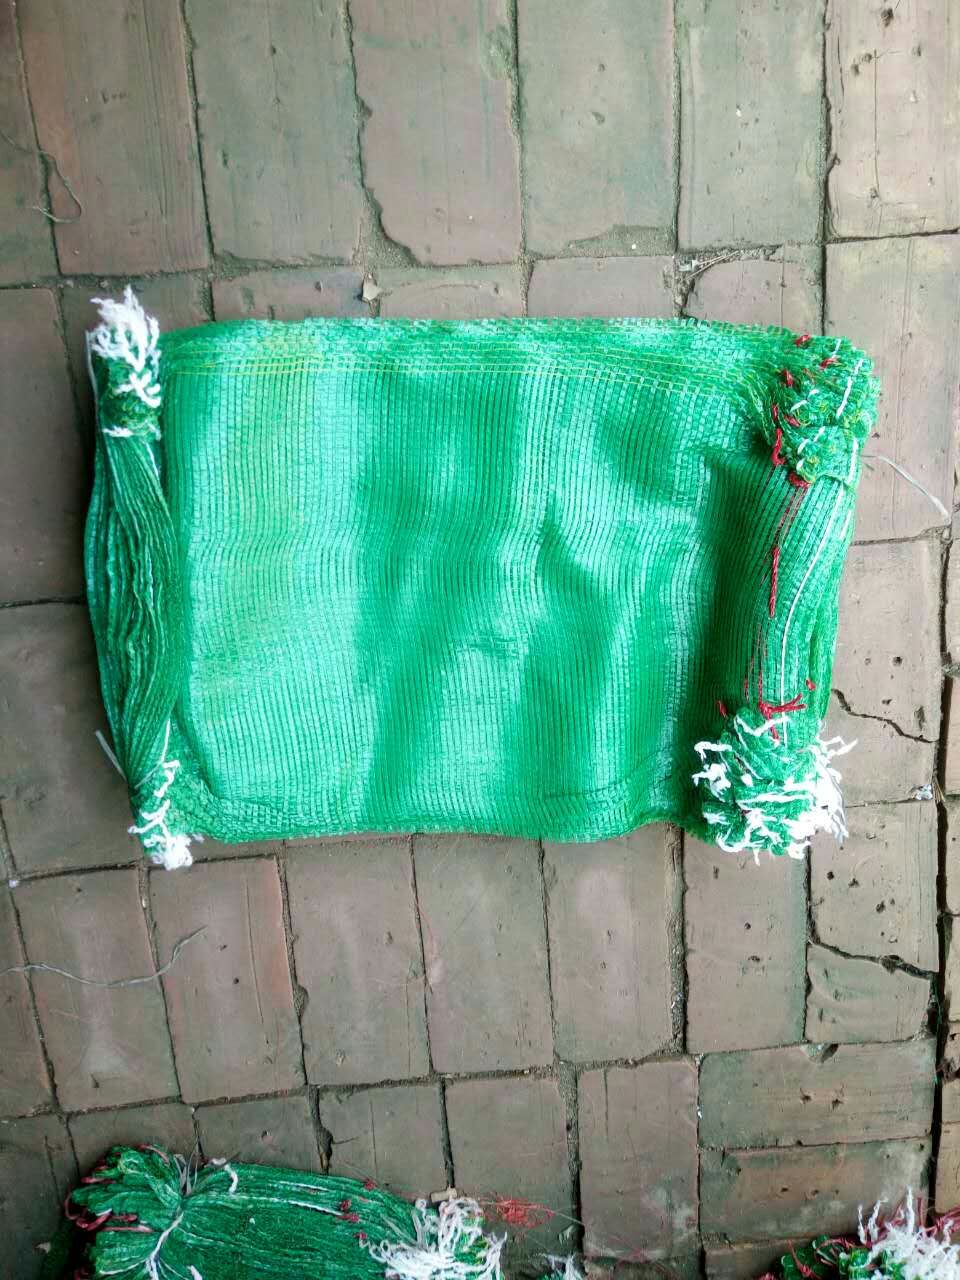 绿化网袋图片|绿化网袋样板图|绿化网袋效果图